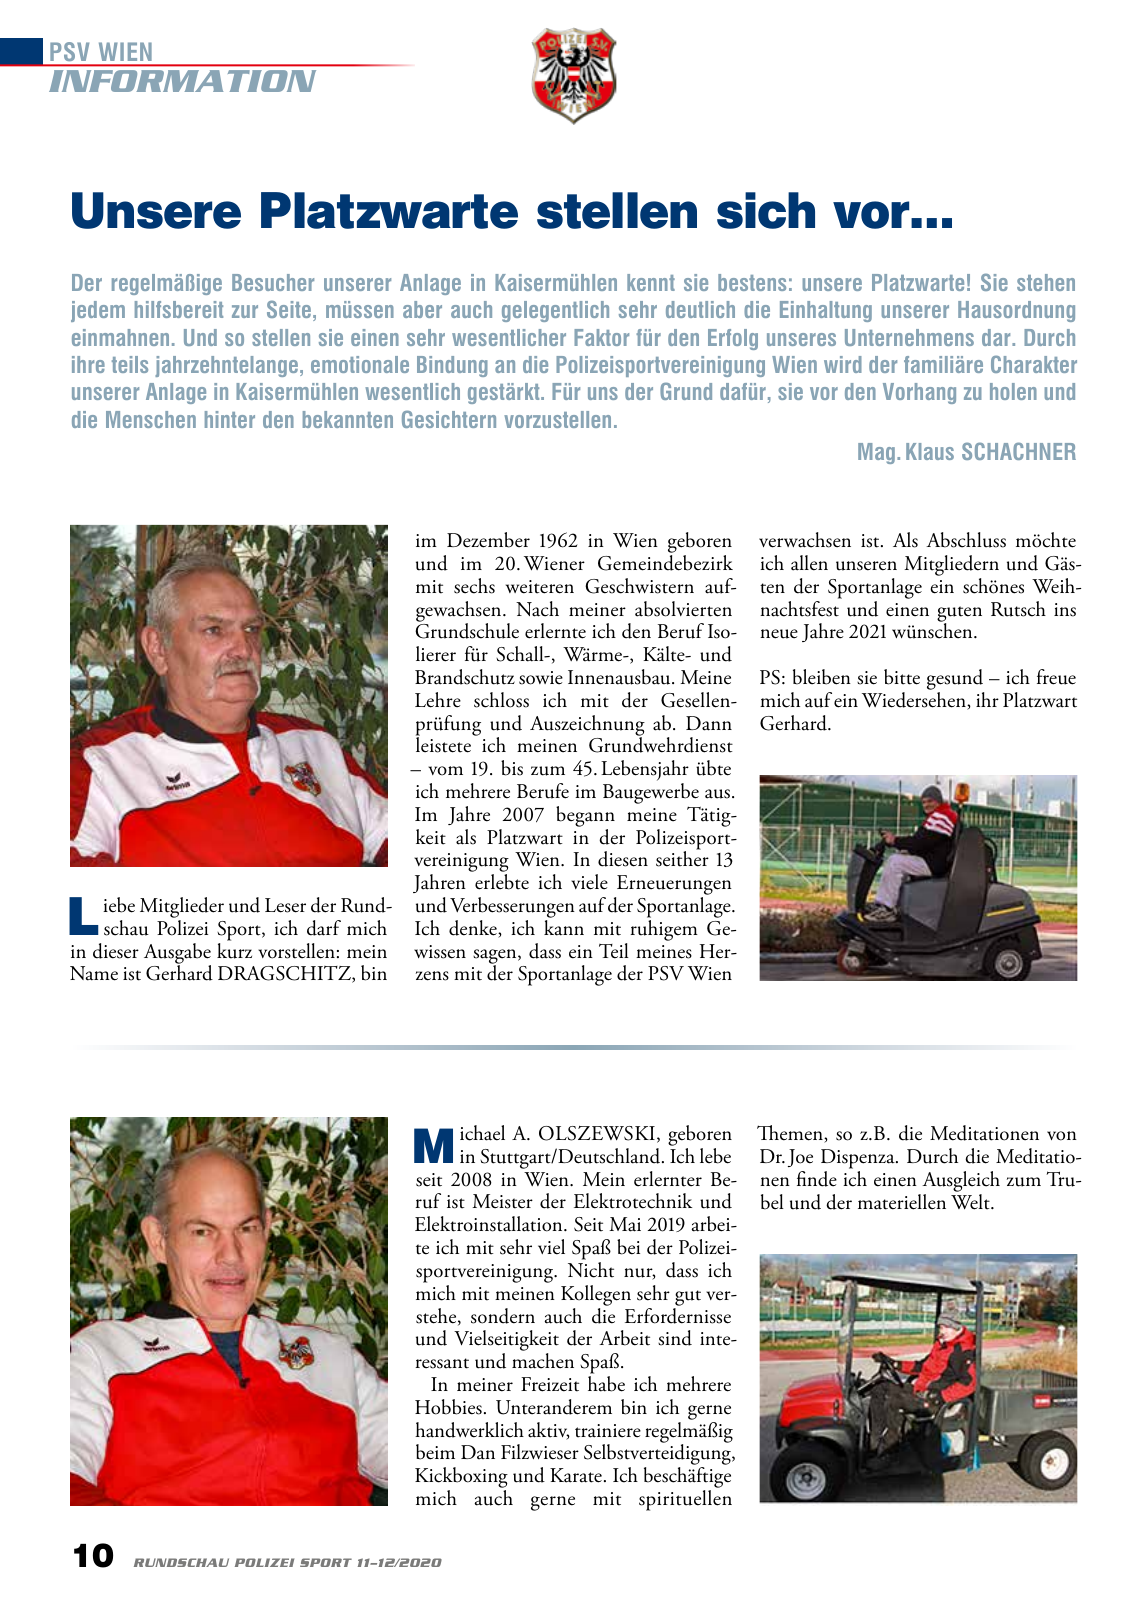 Vorschau Rundschau Polizei Sport 11-12/2020 Seite 10